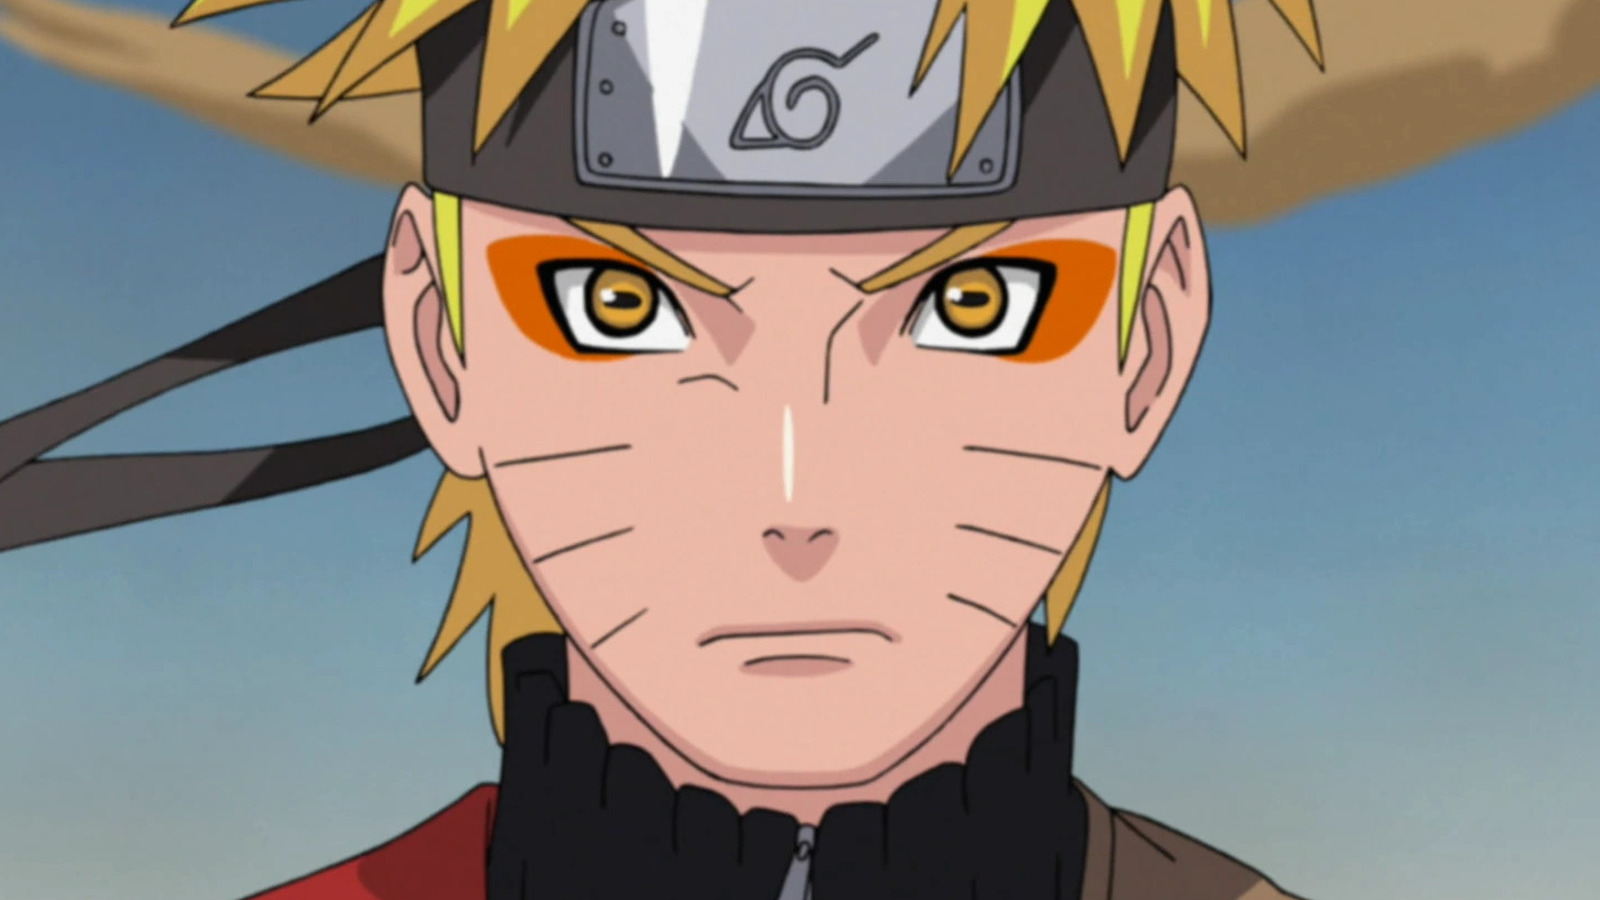 Naruto - It's okay to take it easy sometimes😌